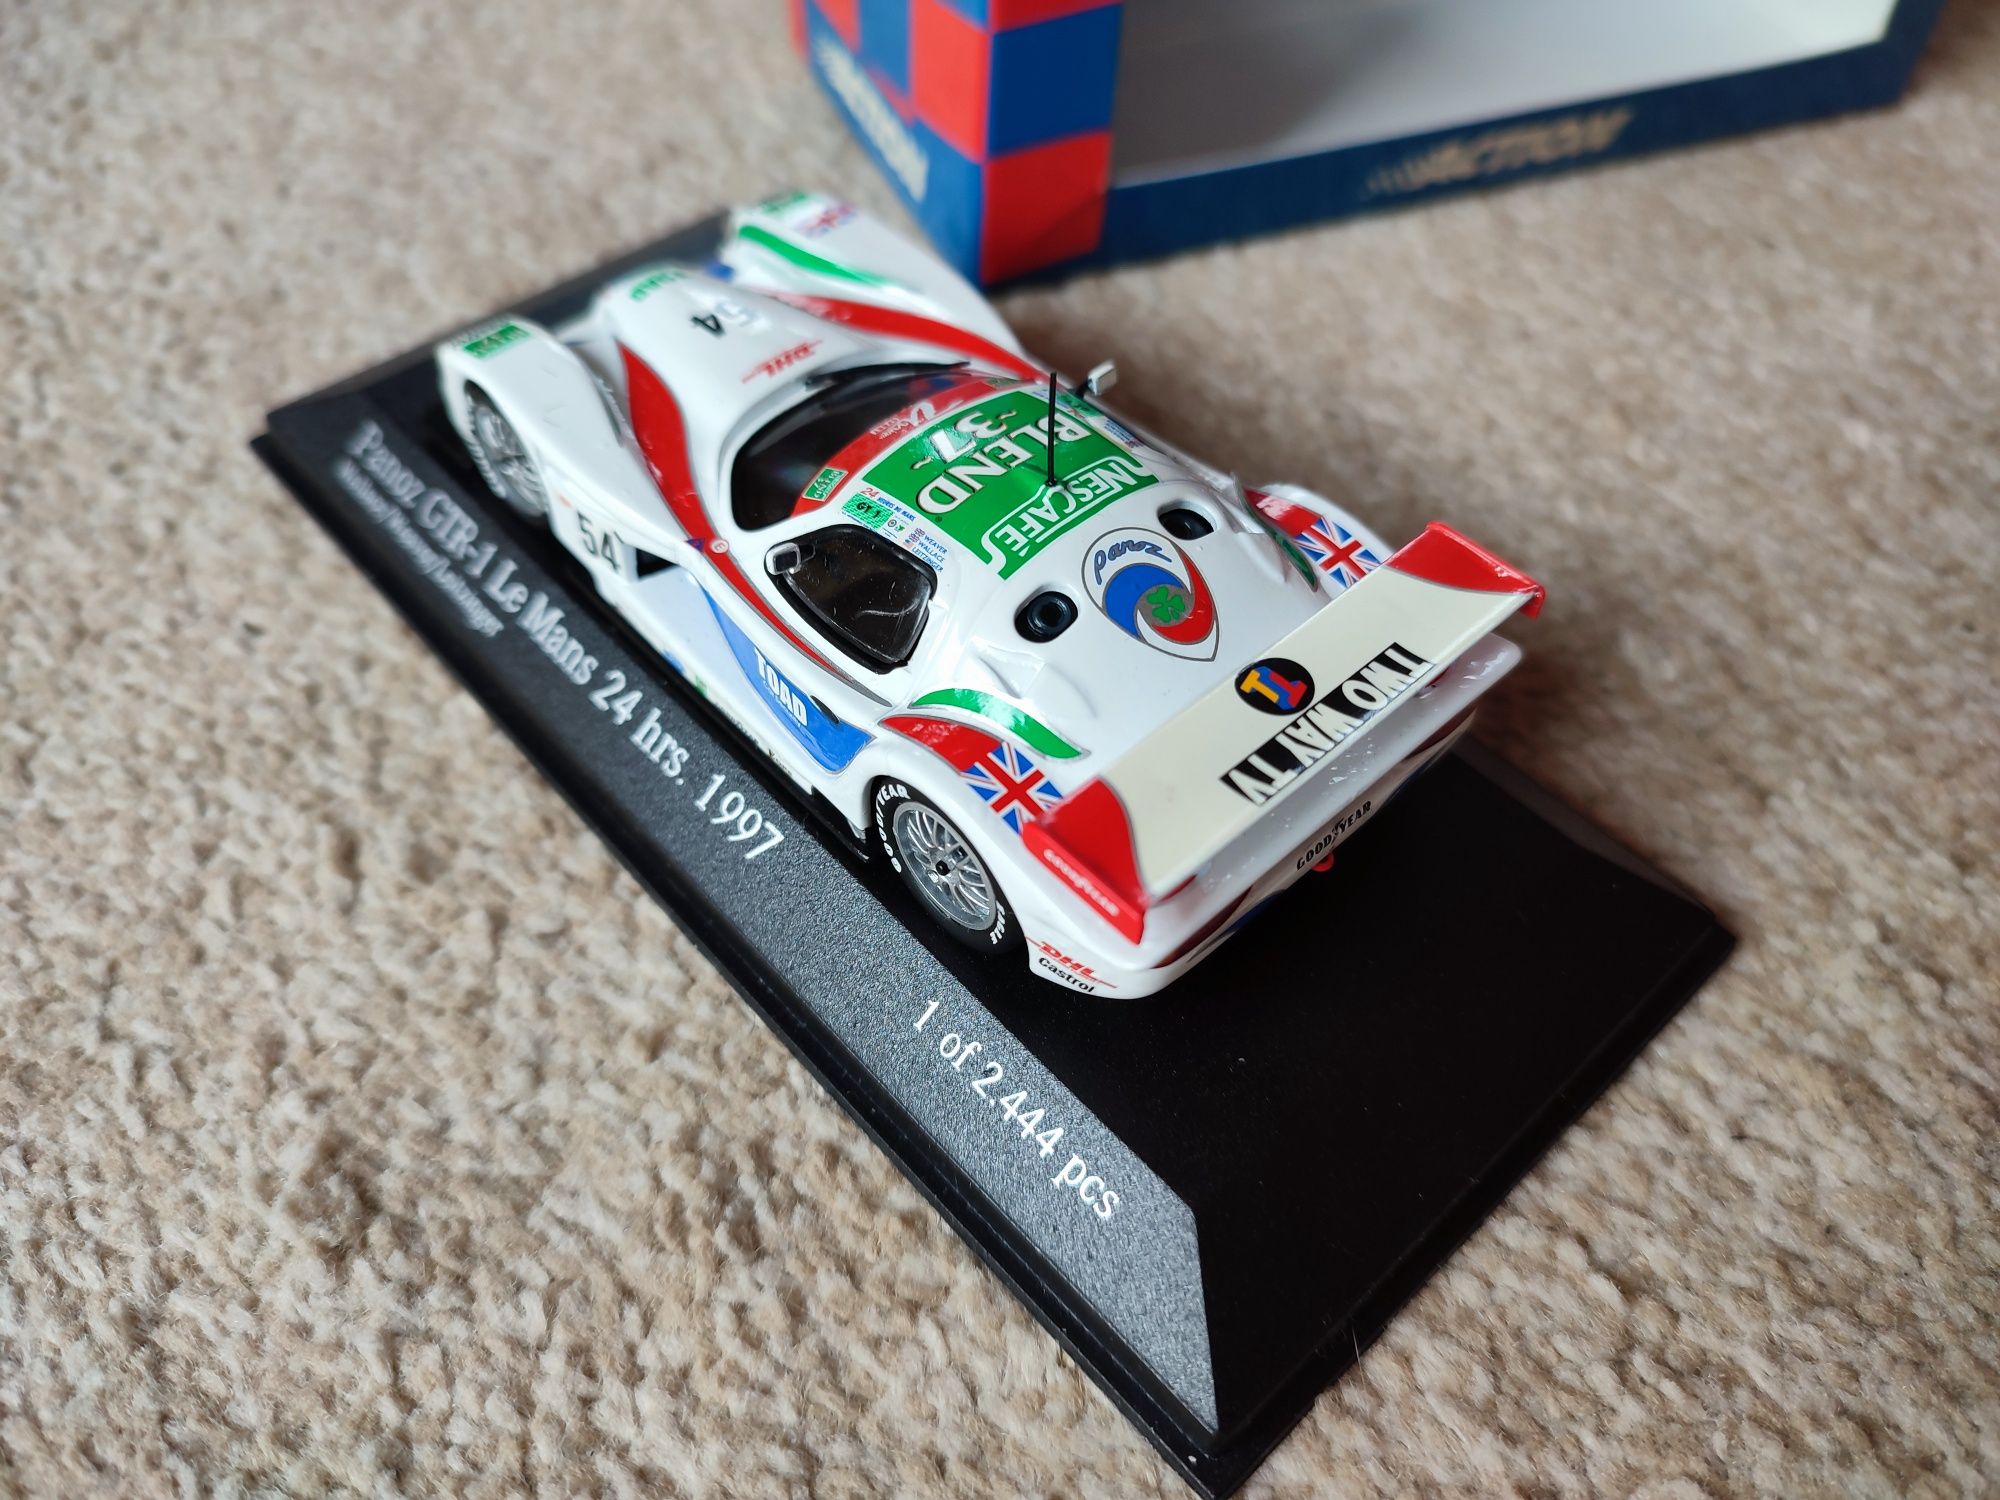 Panoz GTR-1 Le Mans 97, model kolekcjonerski w skali 1:43, nie używany